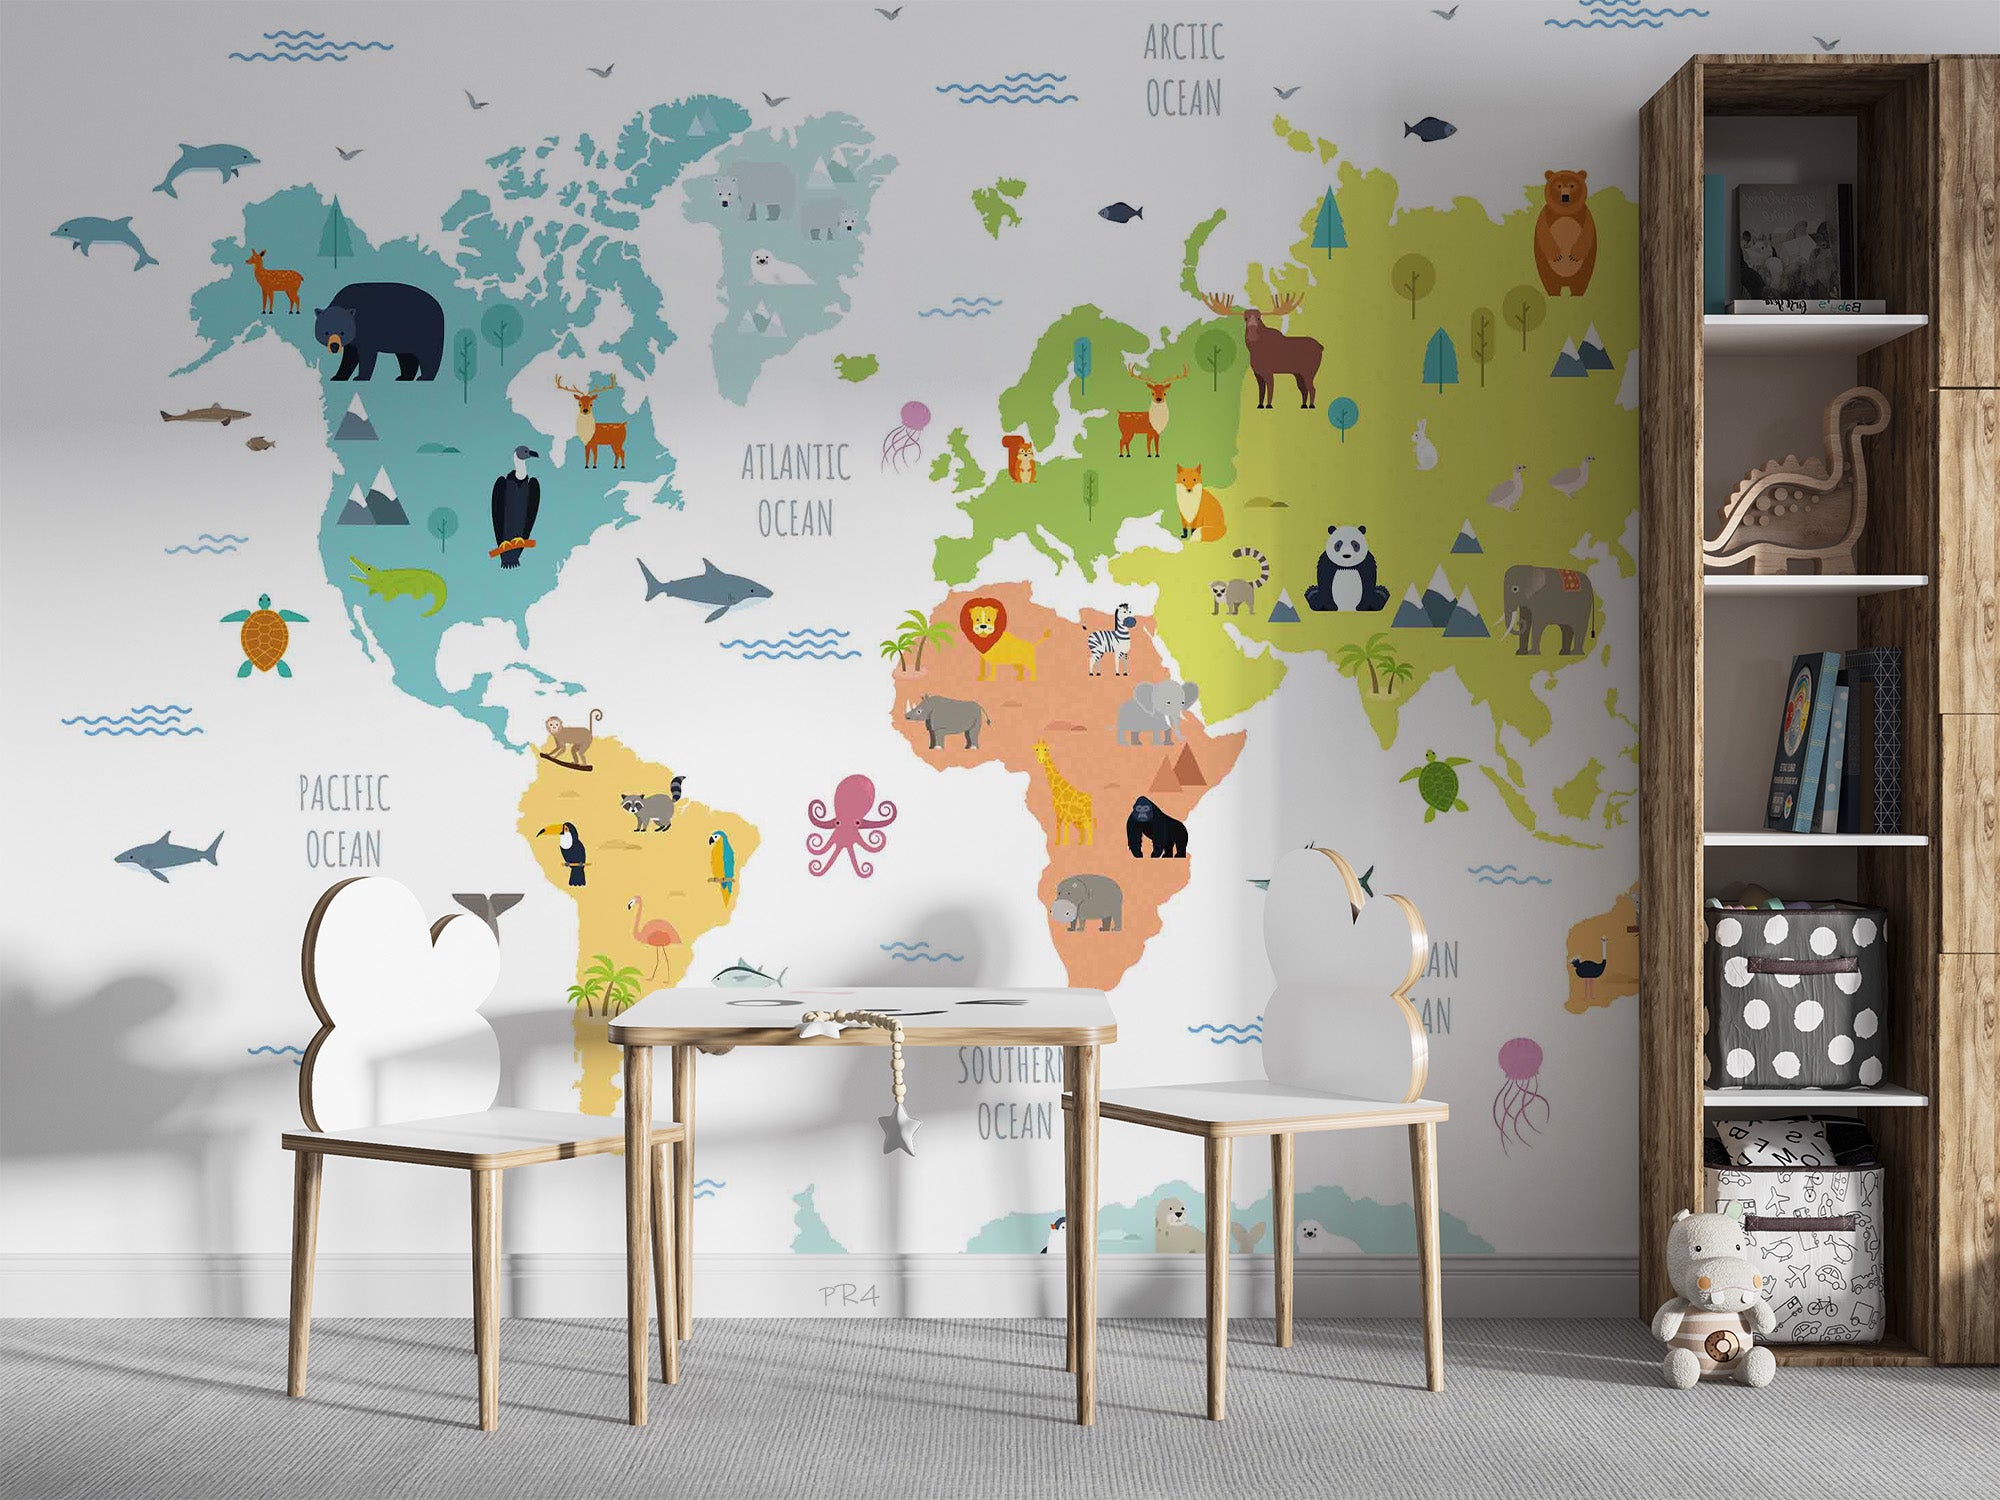 3D World Map Penuins Whale Wall Mural Wallpaper YXL 2738